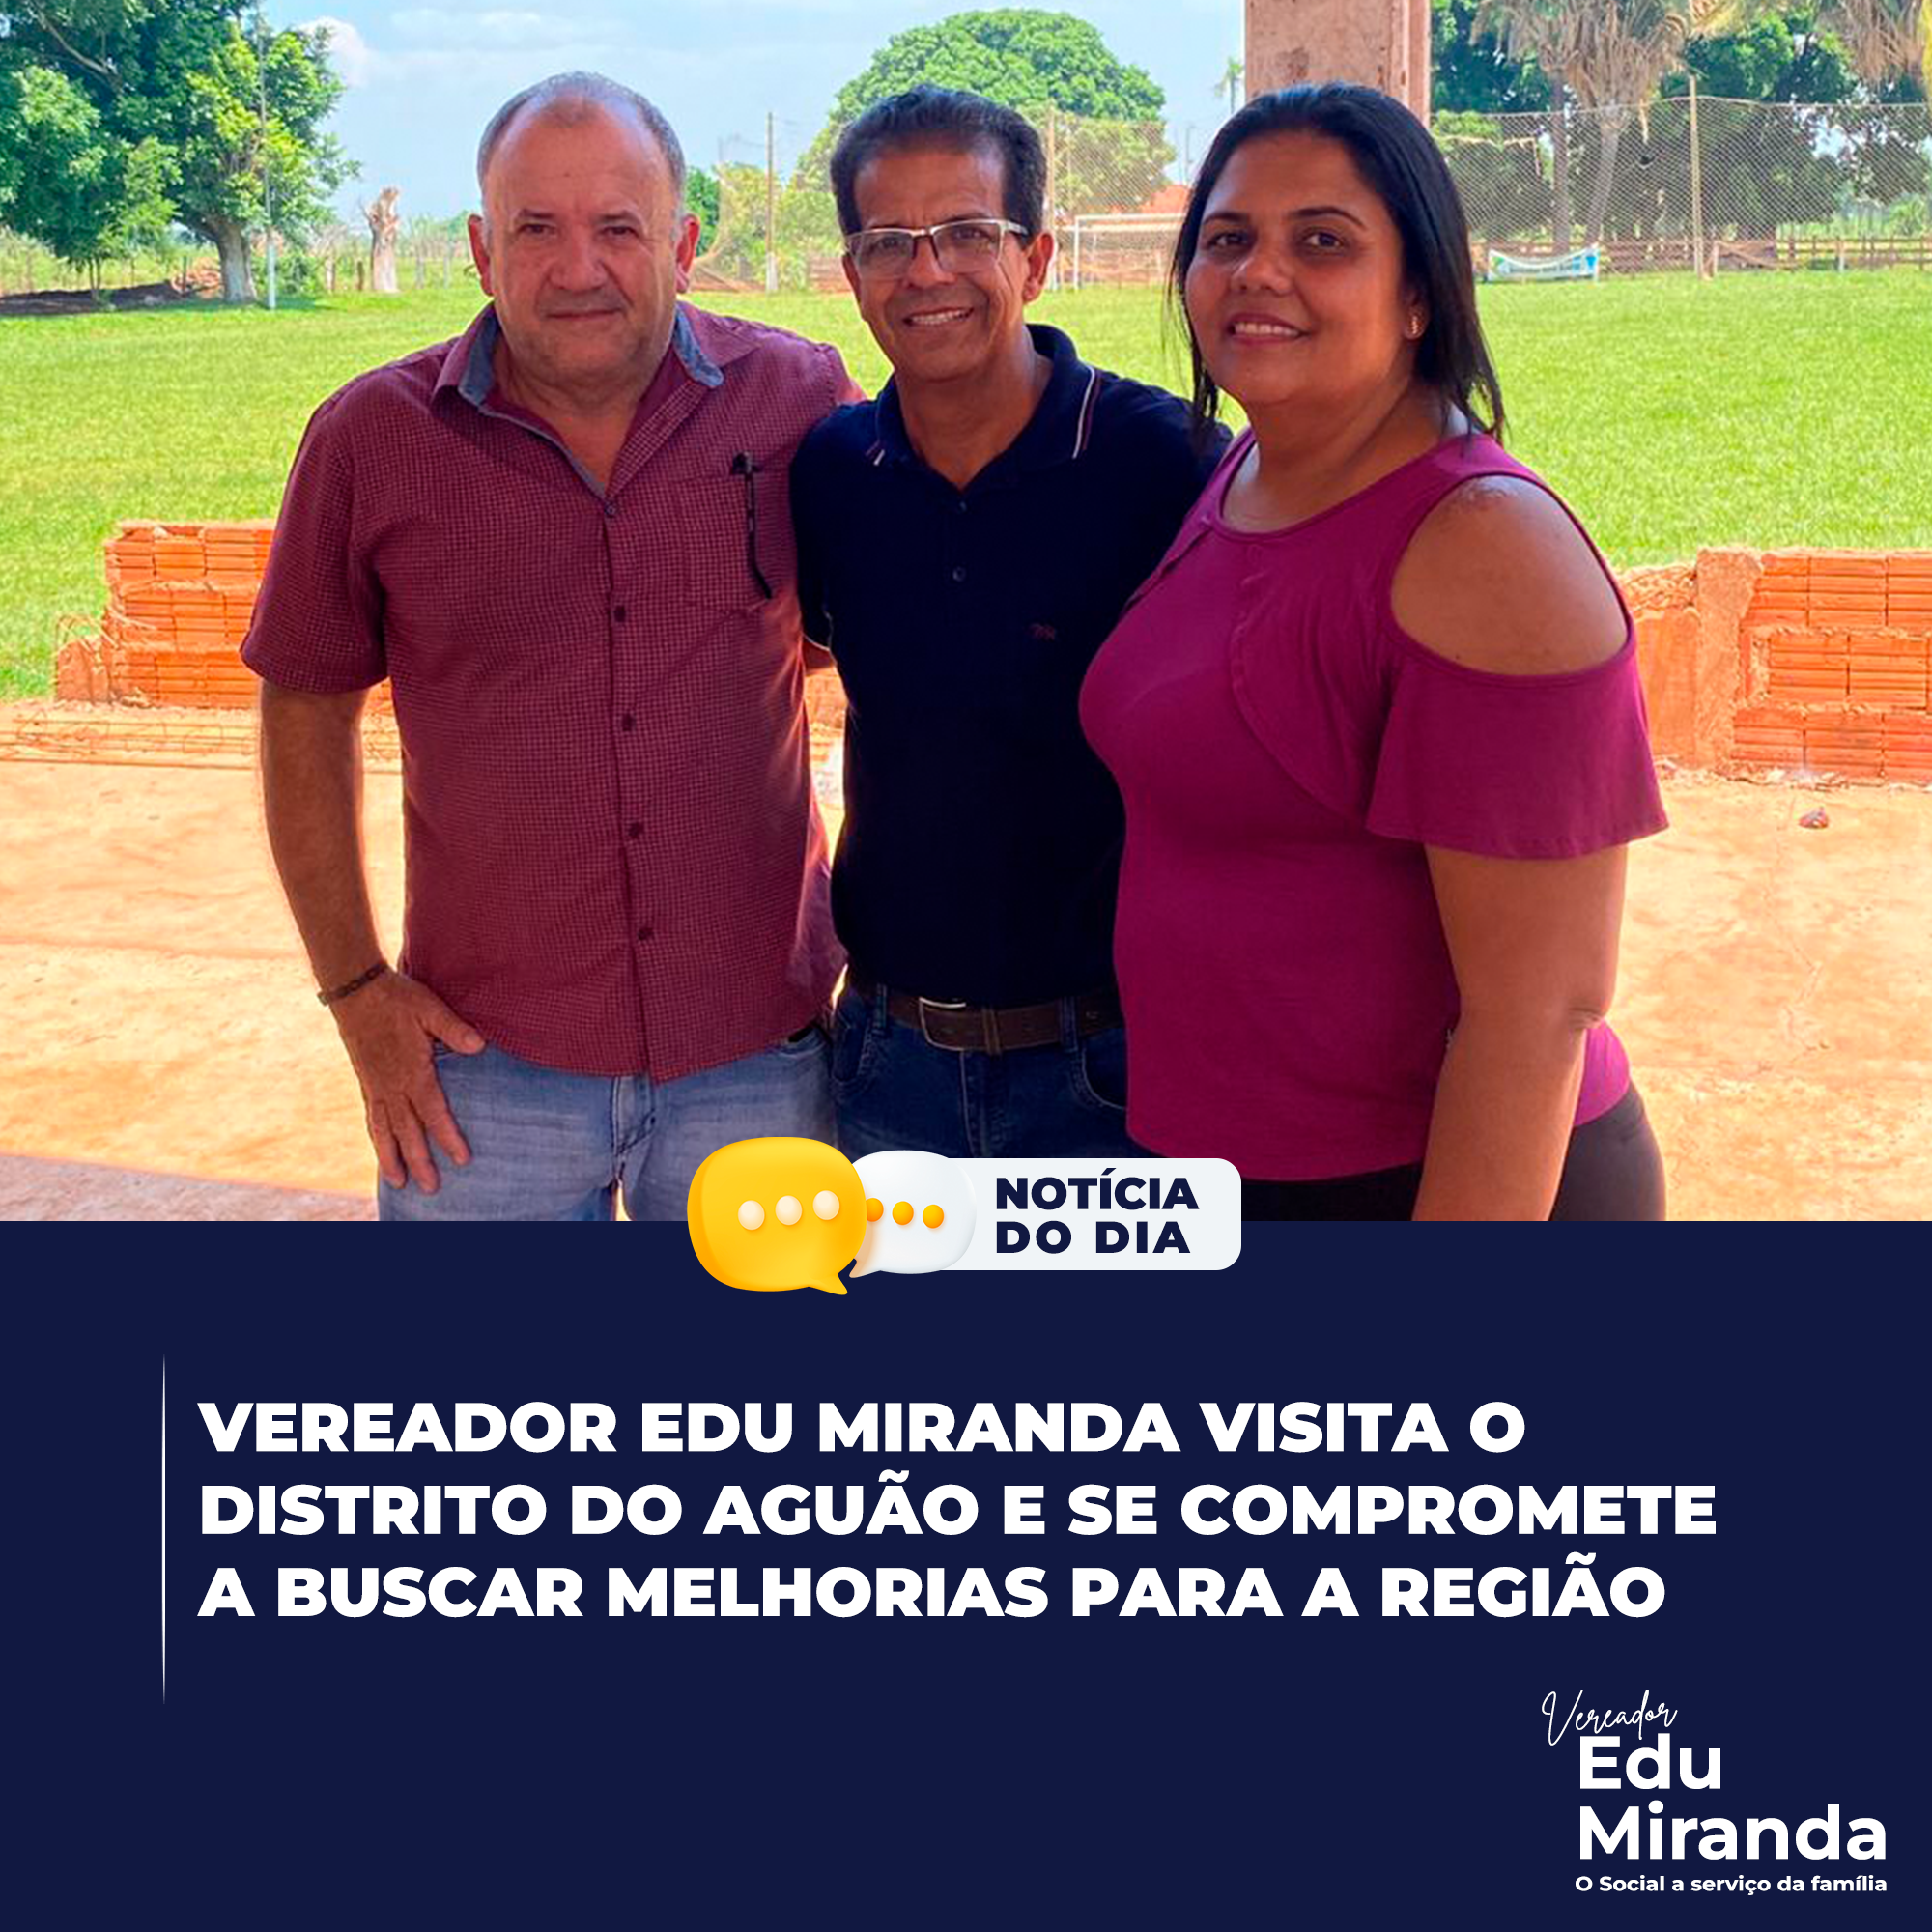 Vereador Edu Miranda visita o distrito do Aguão e se compromete a buscar melhorias para a região.